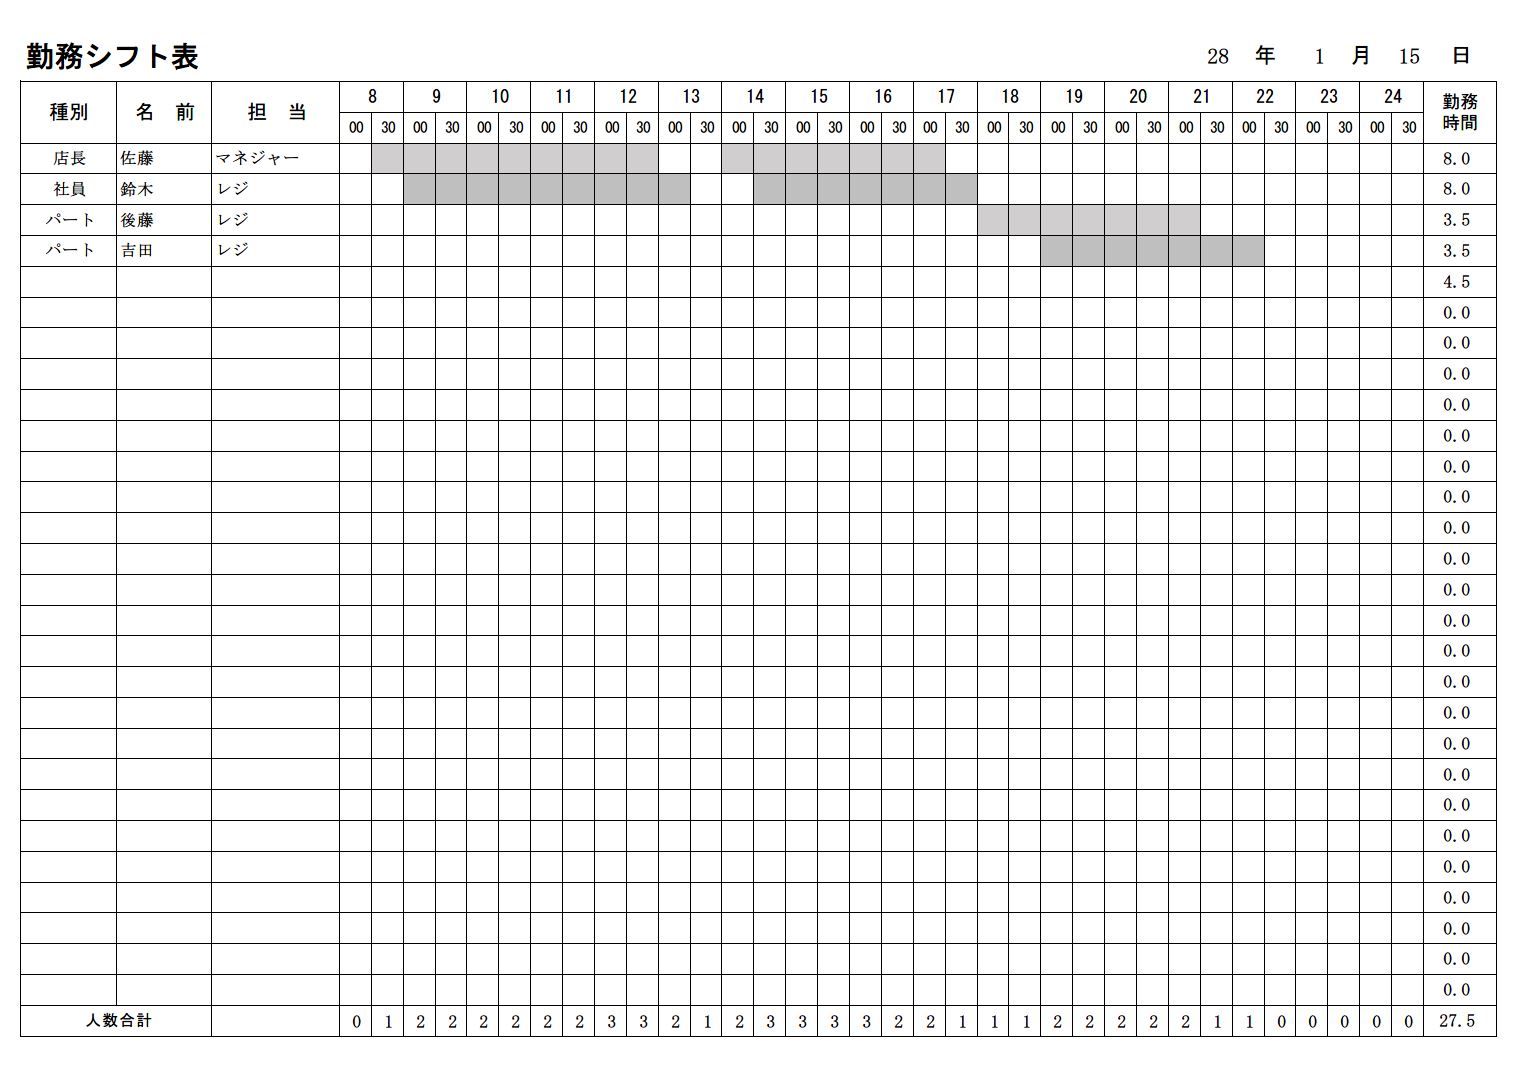 出勤簿 勤怠管理表 のテンプレート03 タイムカード 手書き入力 エクセル Excel 文書 テンプレートの無料ダウンロード